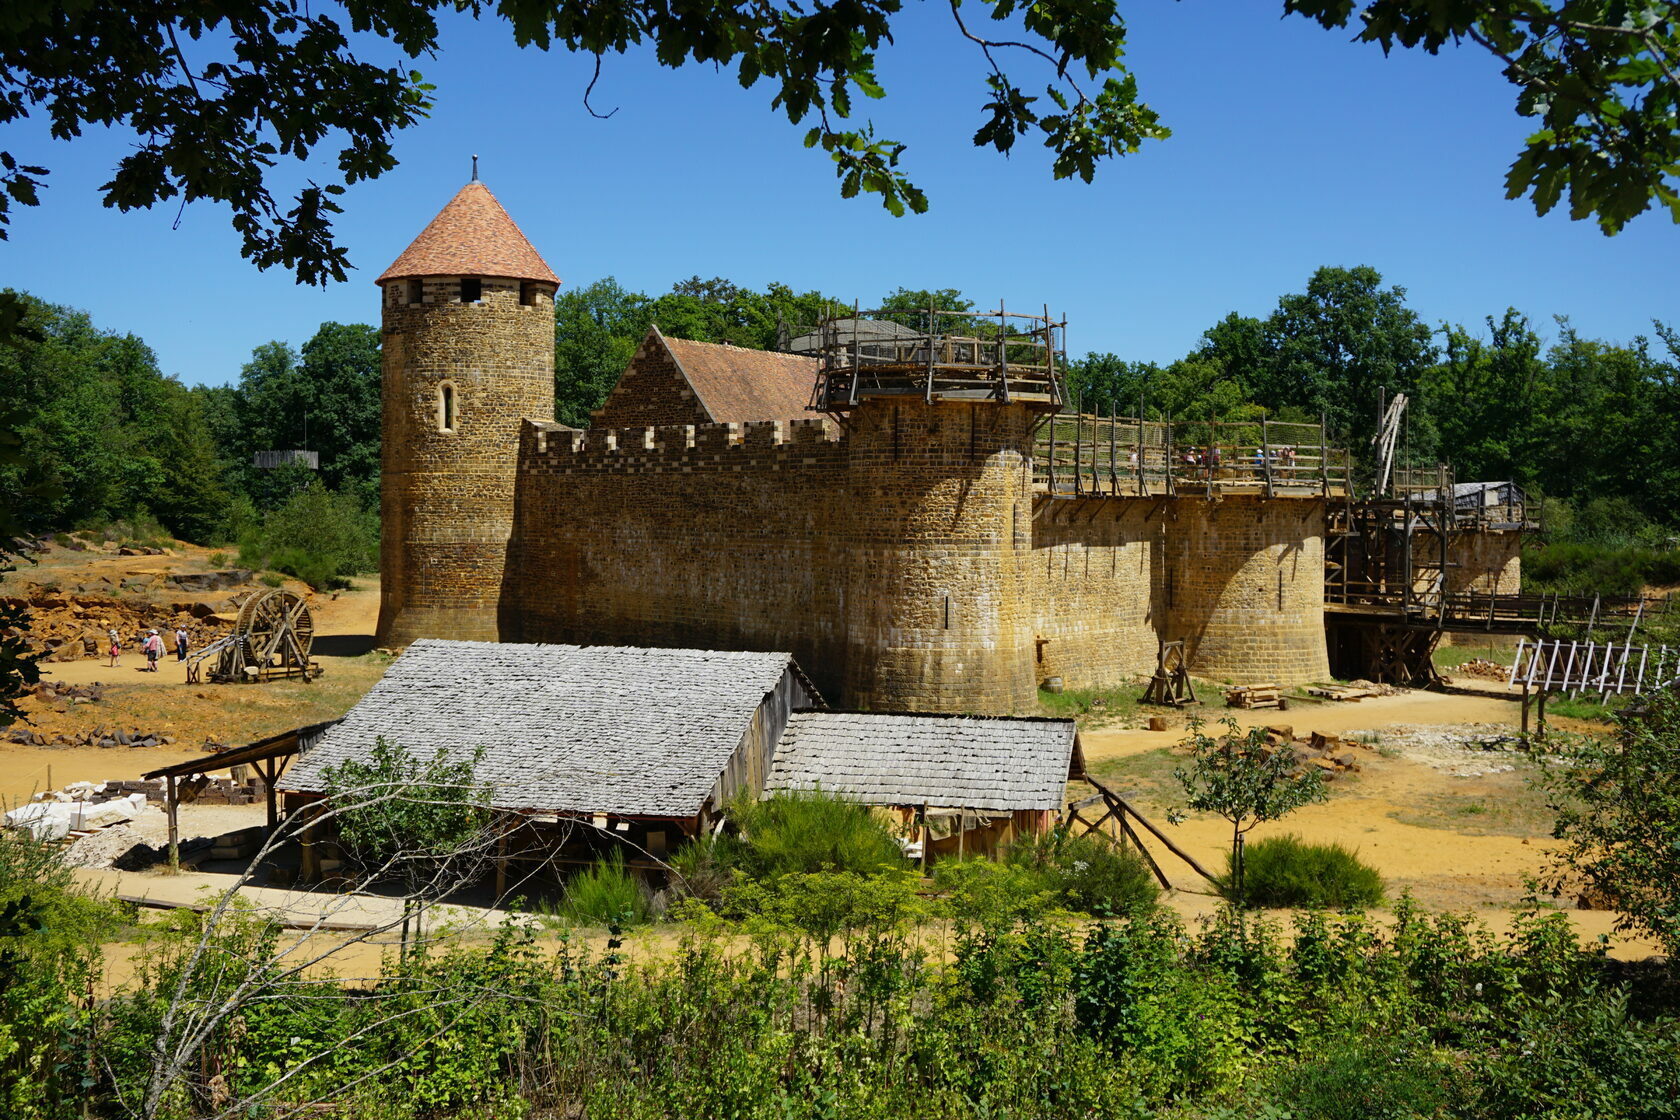 Les plans du château - Guédelon